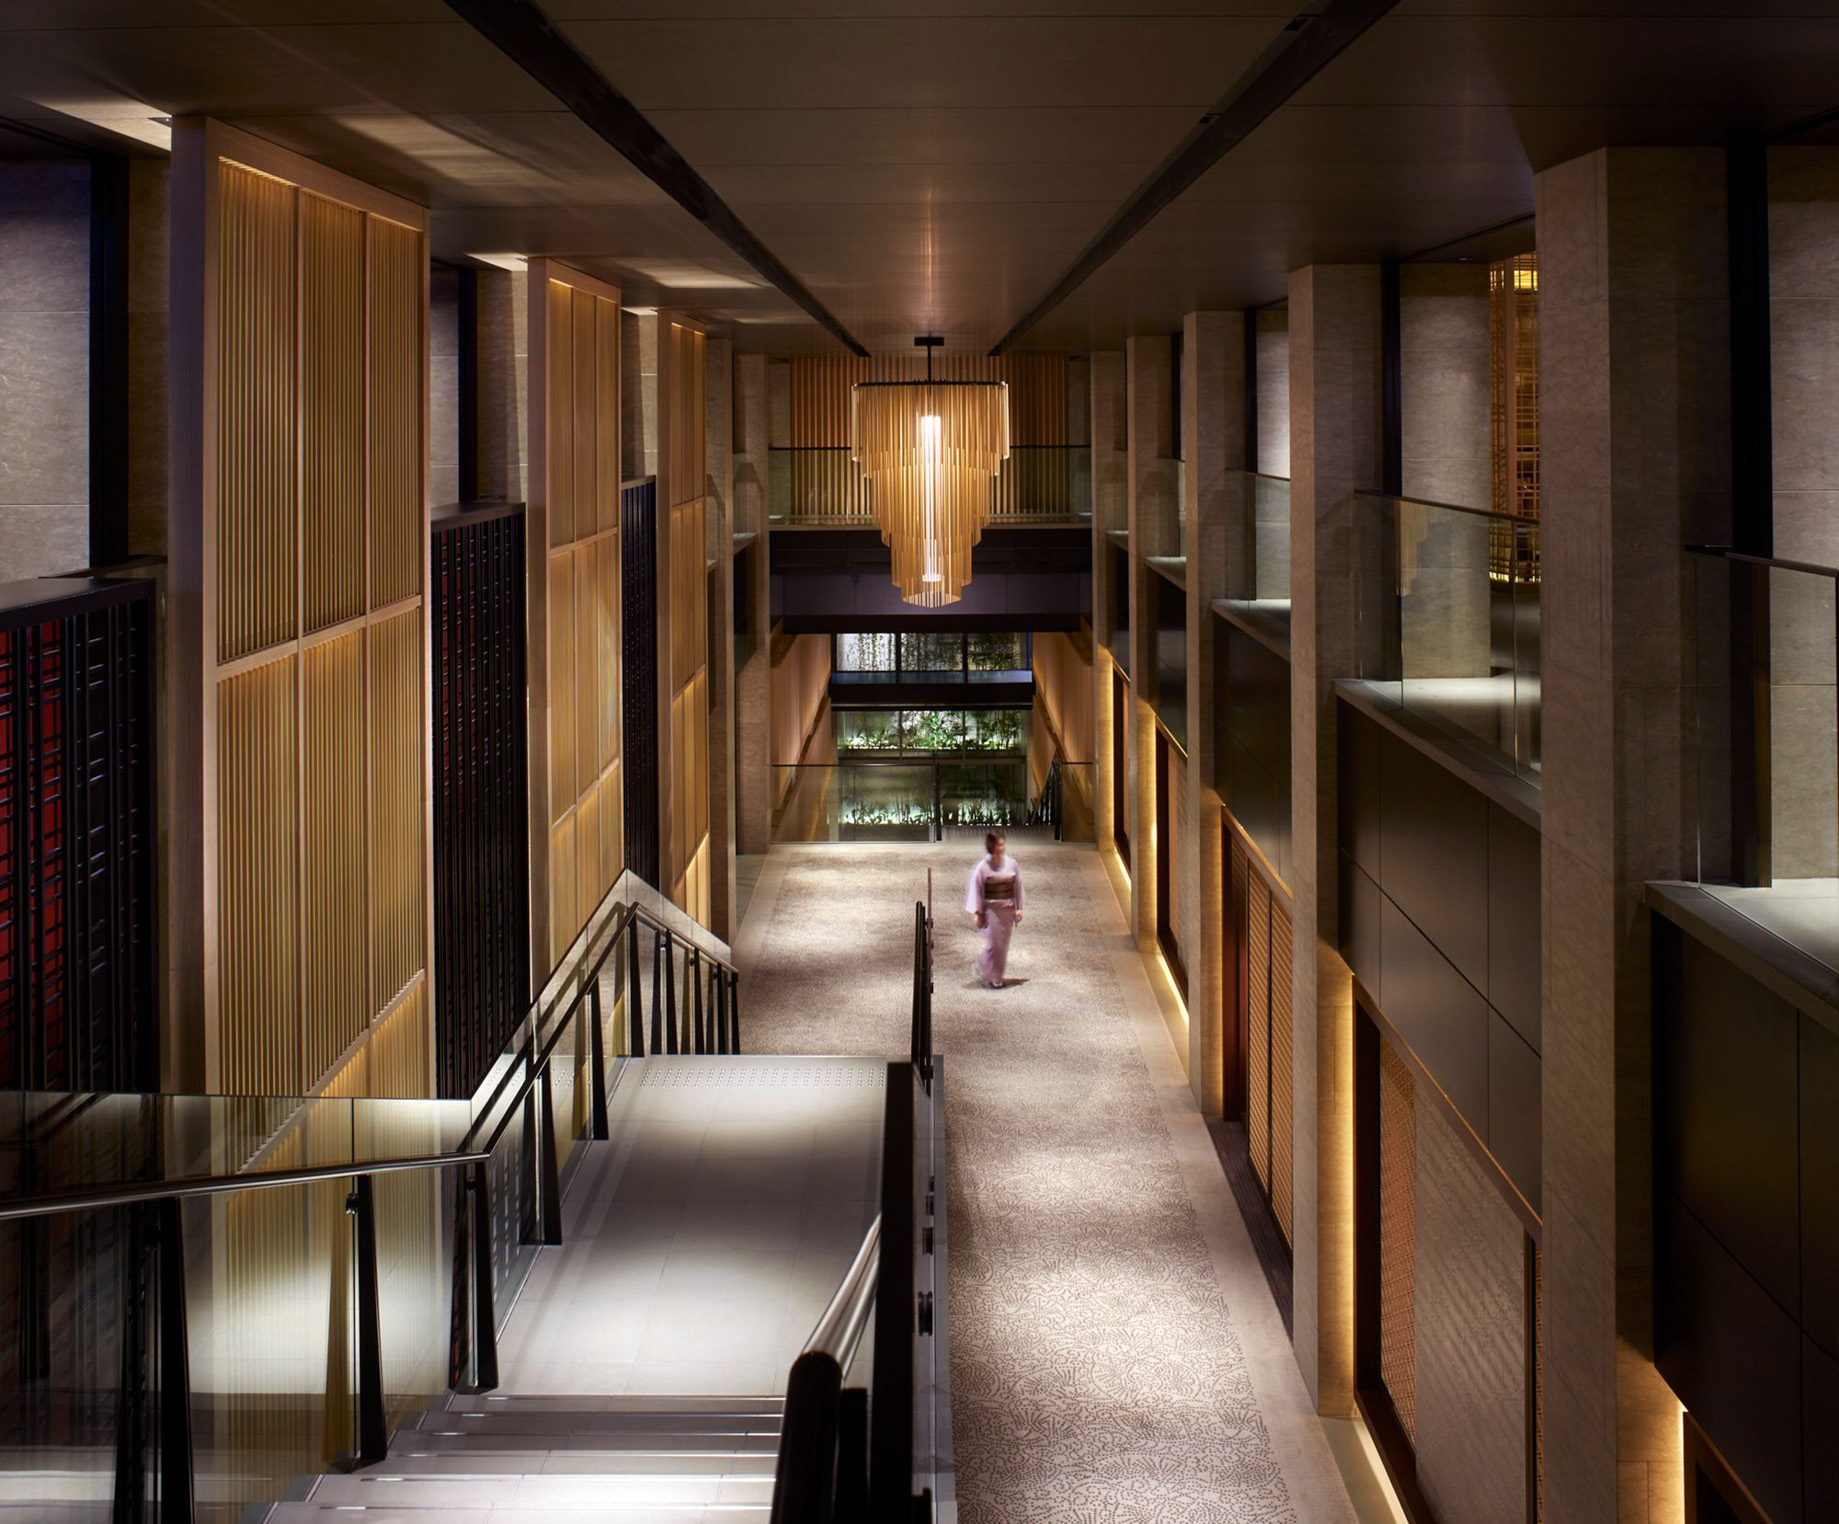 The Ritz-Carlton, Kyoto Hotel – Nakagyo Ward, Kyoto, Japan – Lobby Atrium